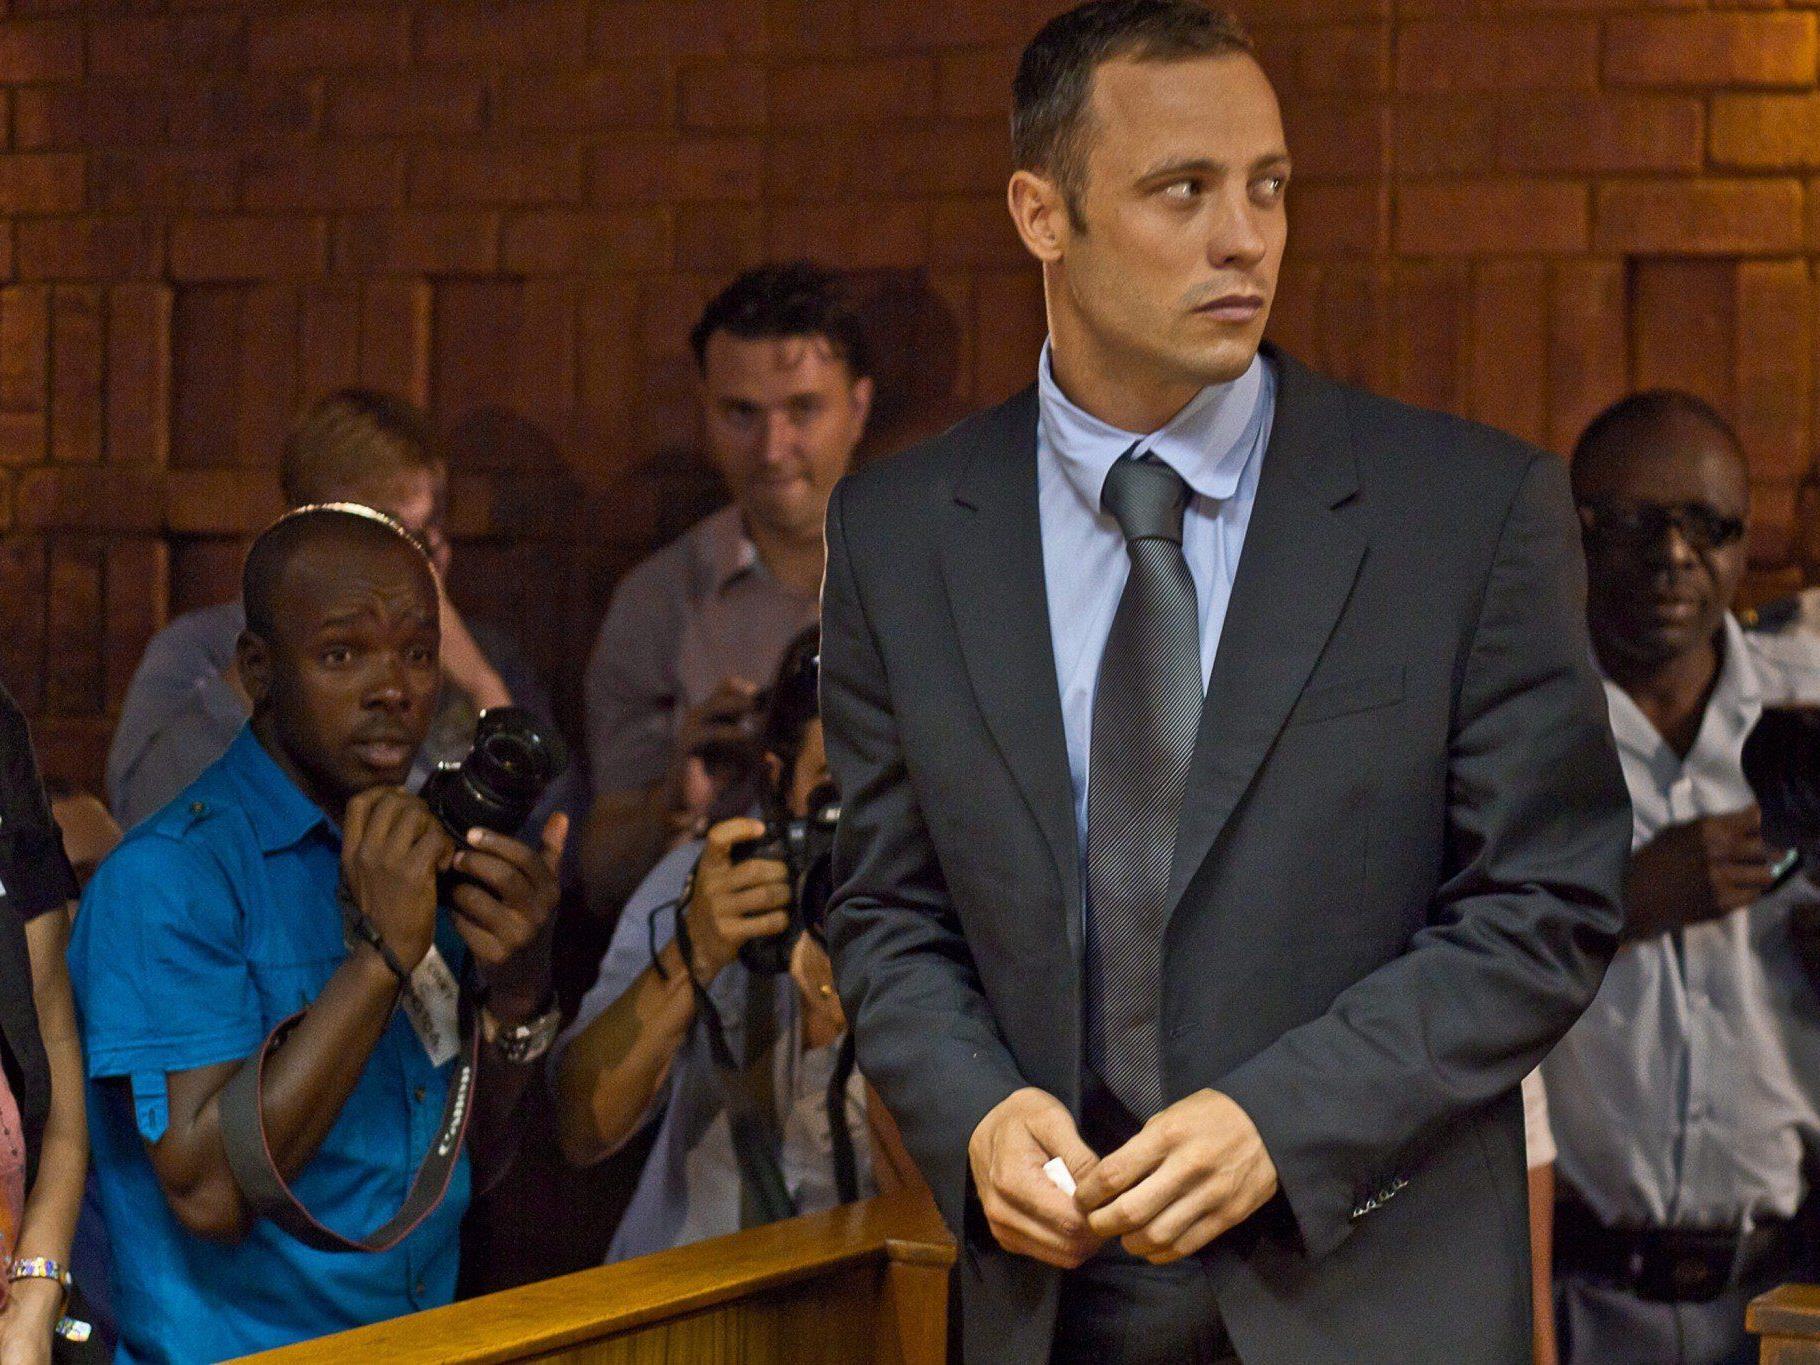 Der unter Mordverdacht stehende Pistorius kommt gegen Kaution frei.